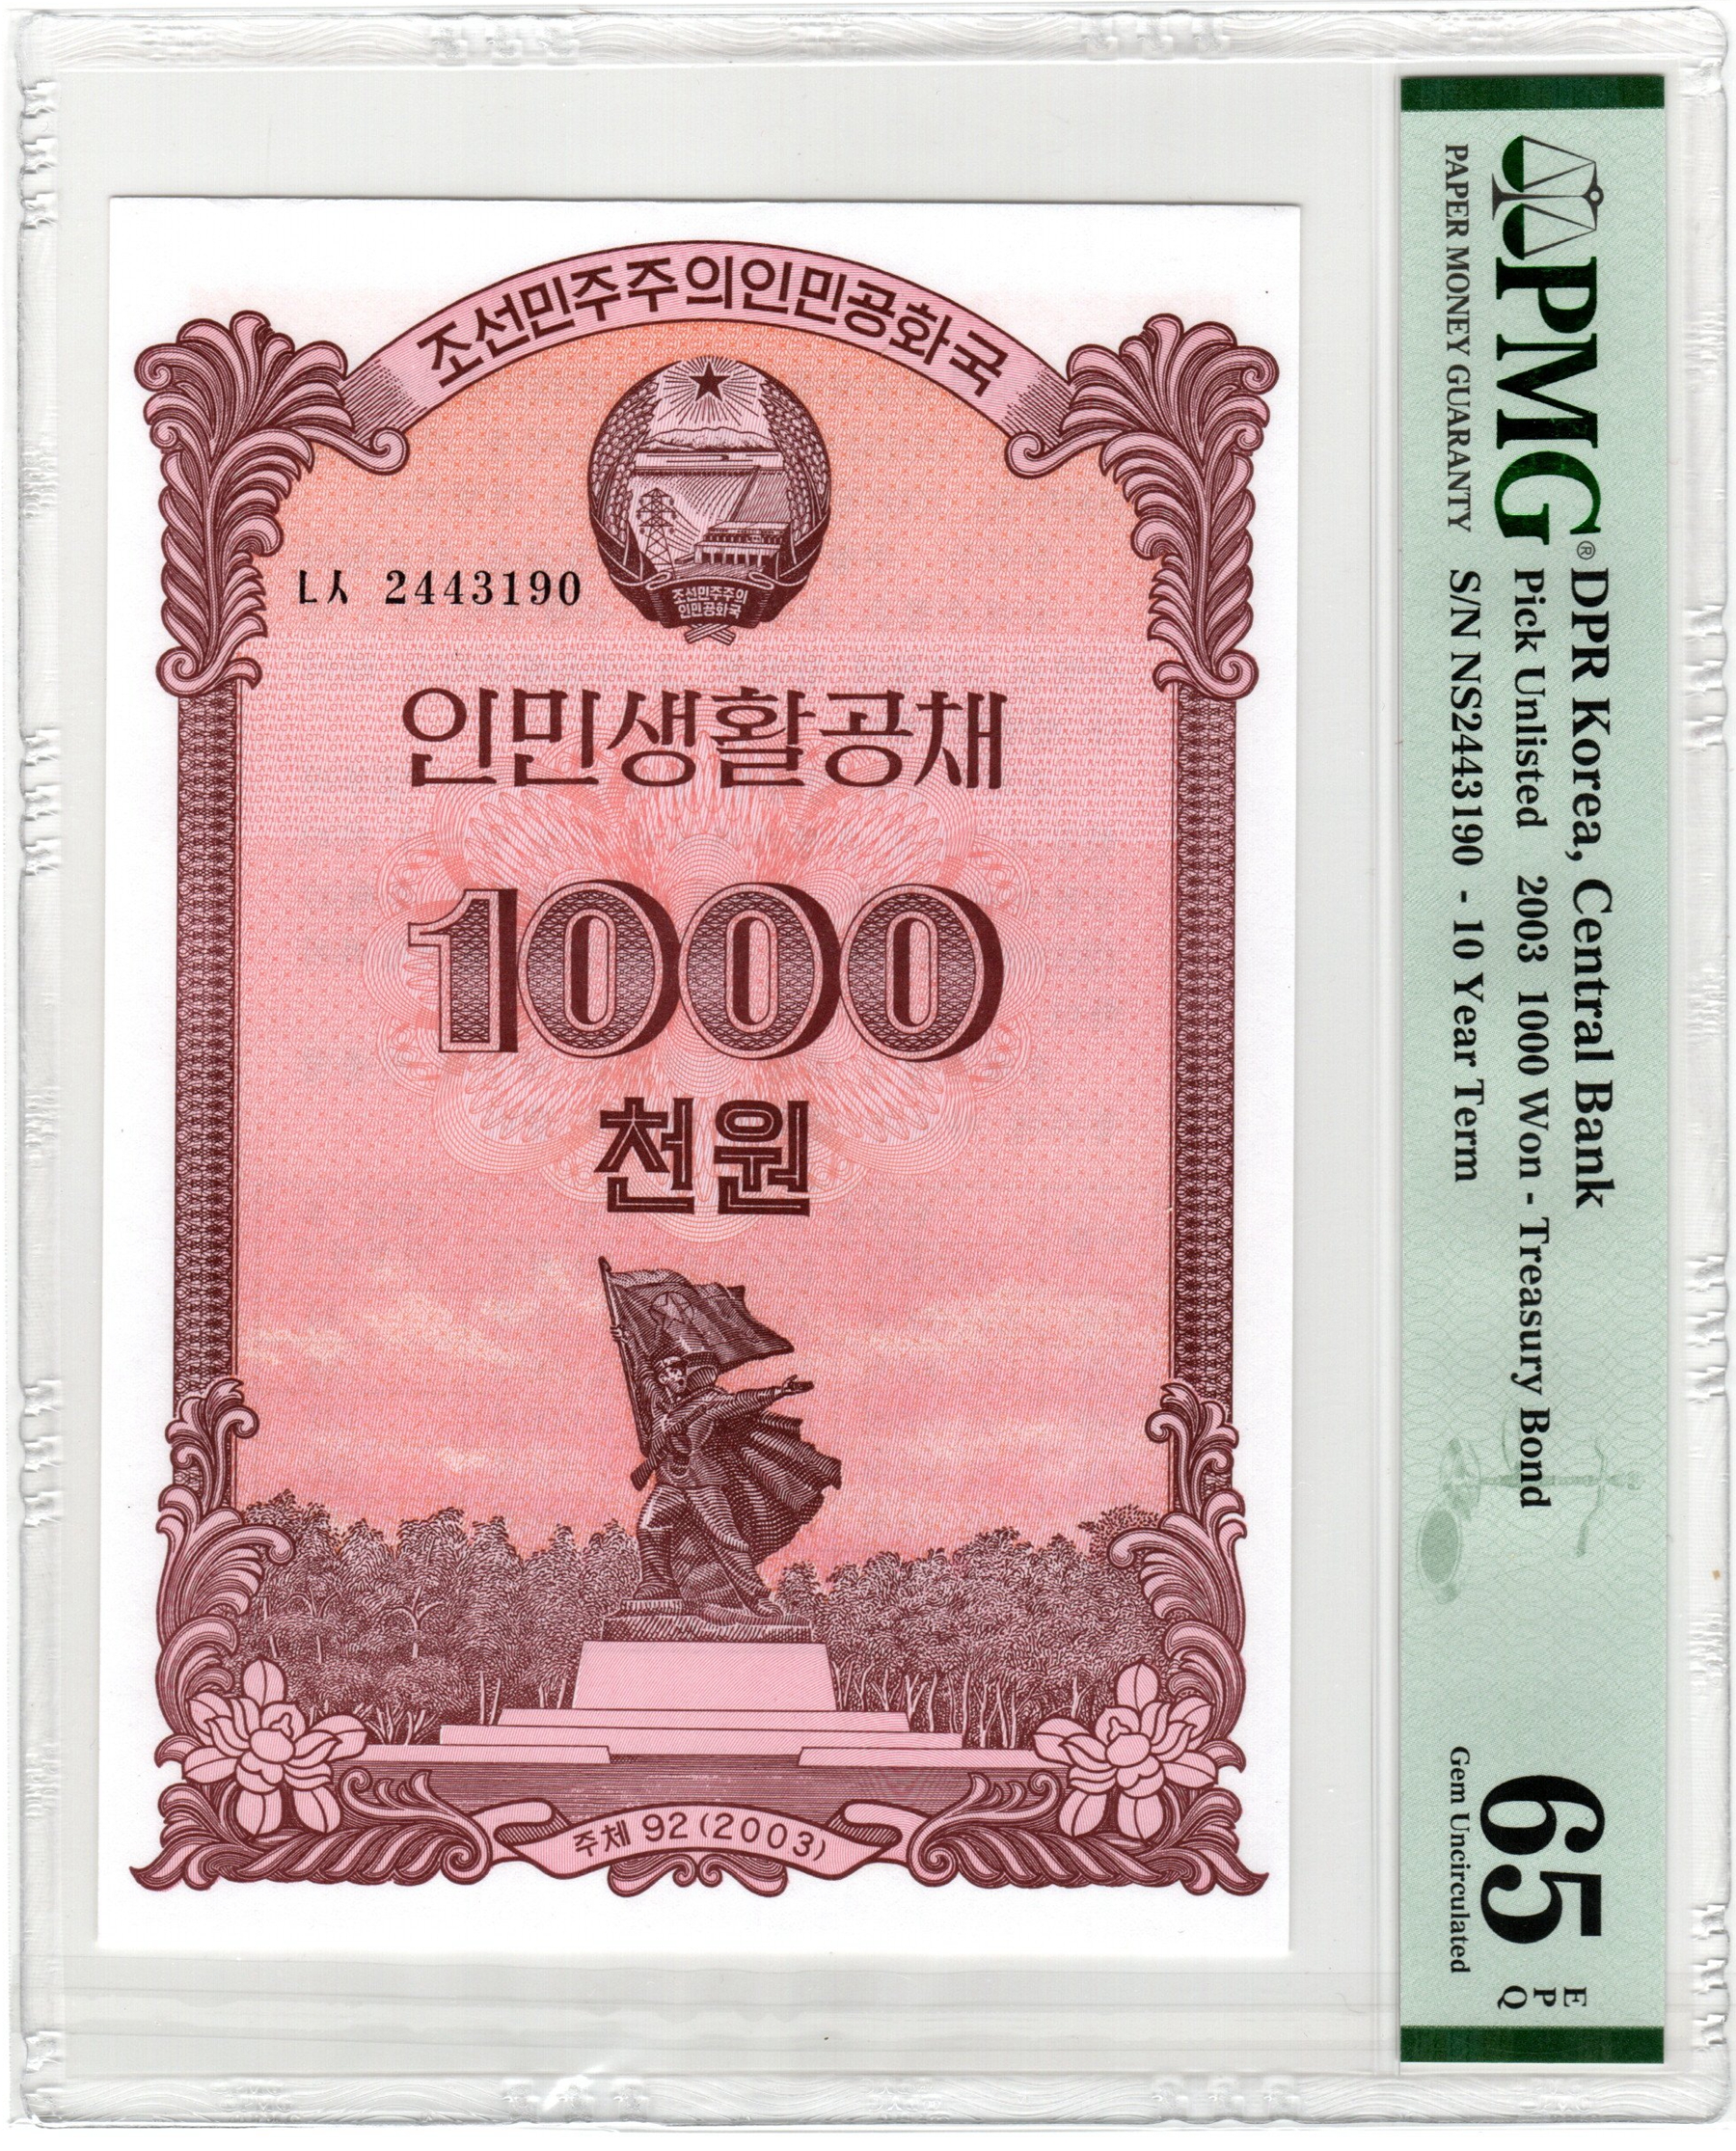 L1261, PMG65 EPQ, Korea 10 Years Treasury Bond 1000 Wons, 2003